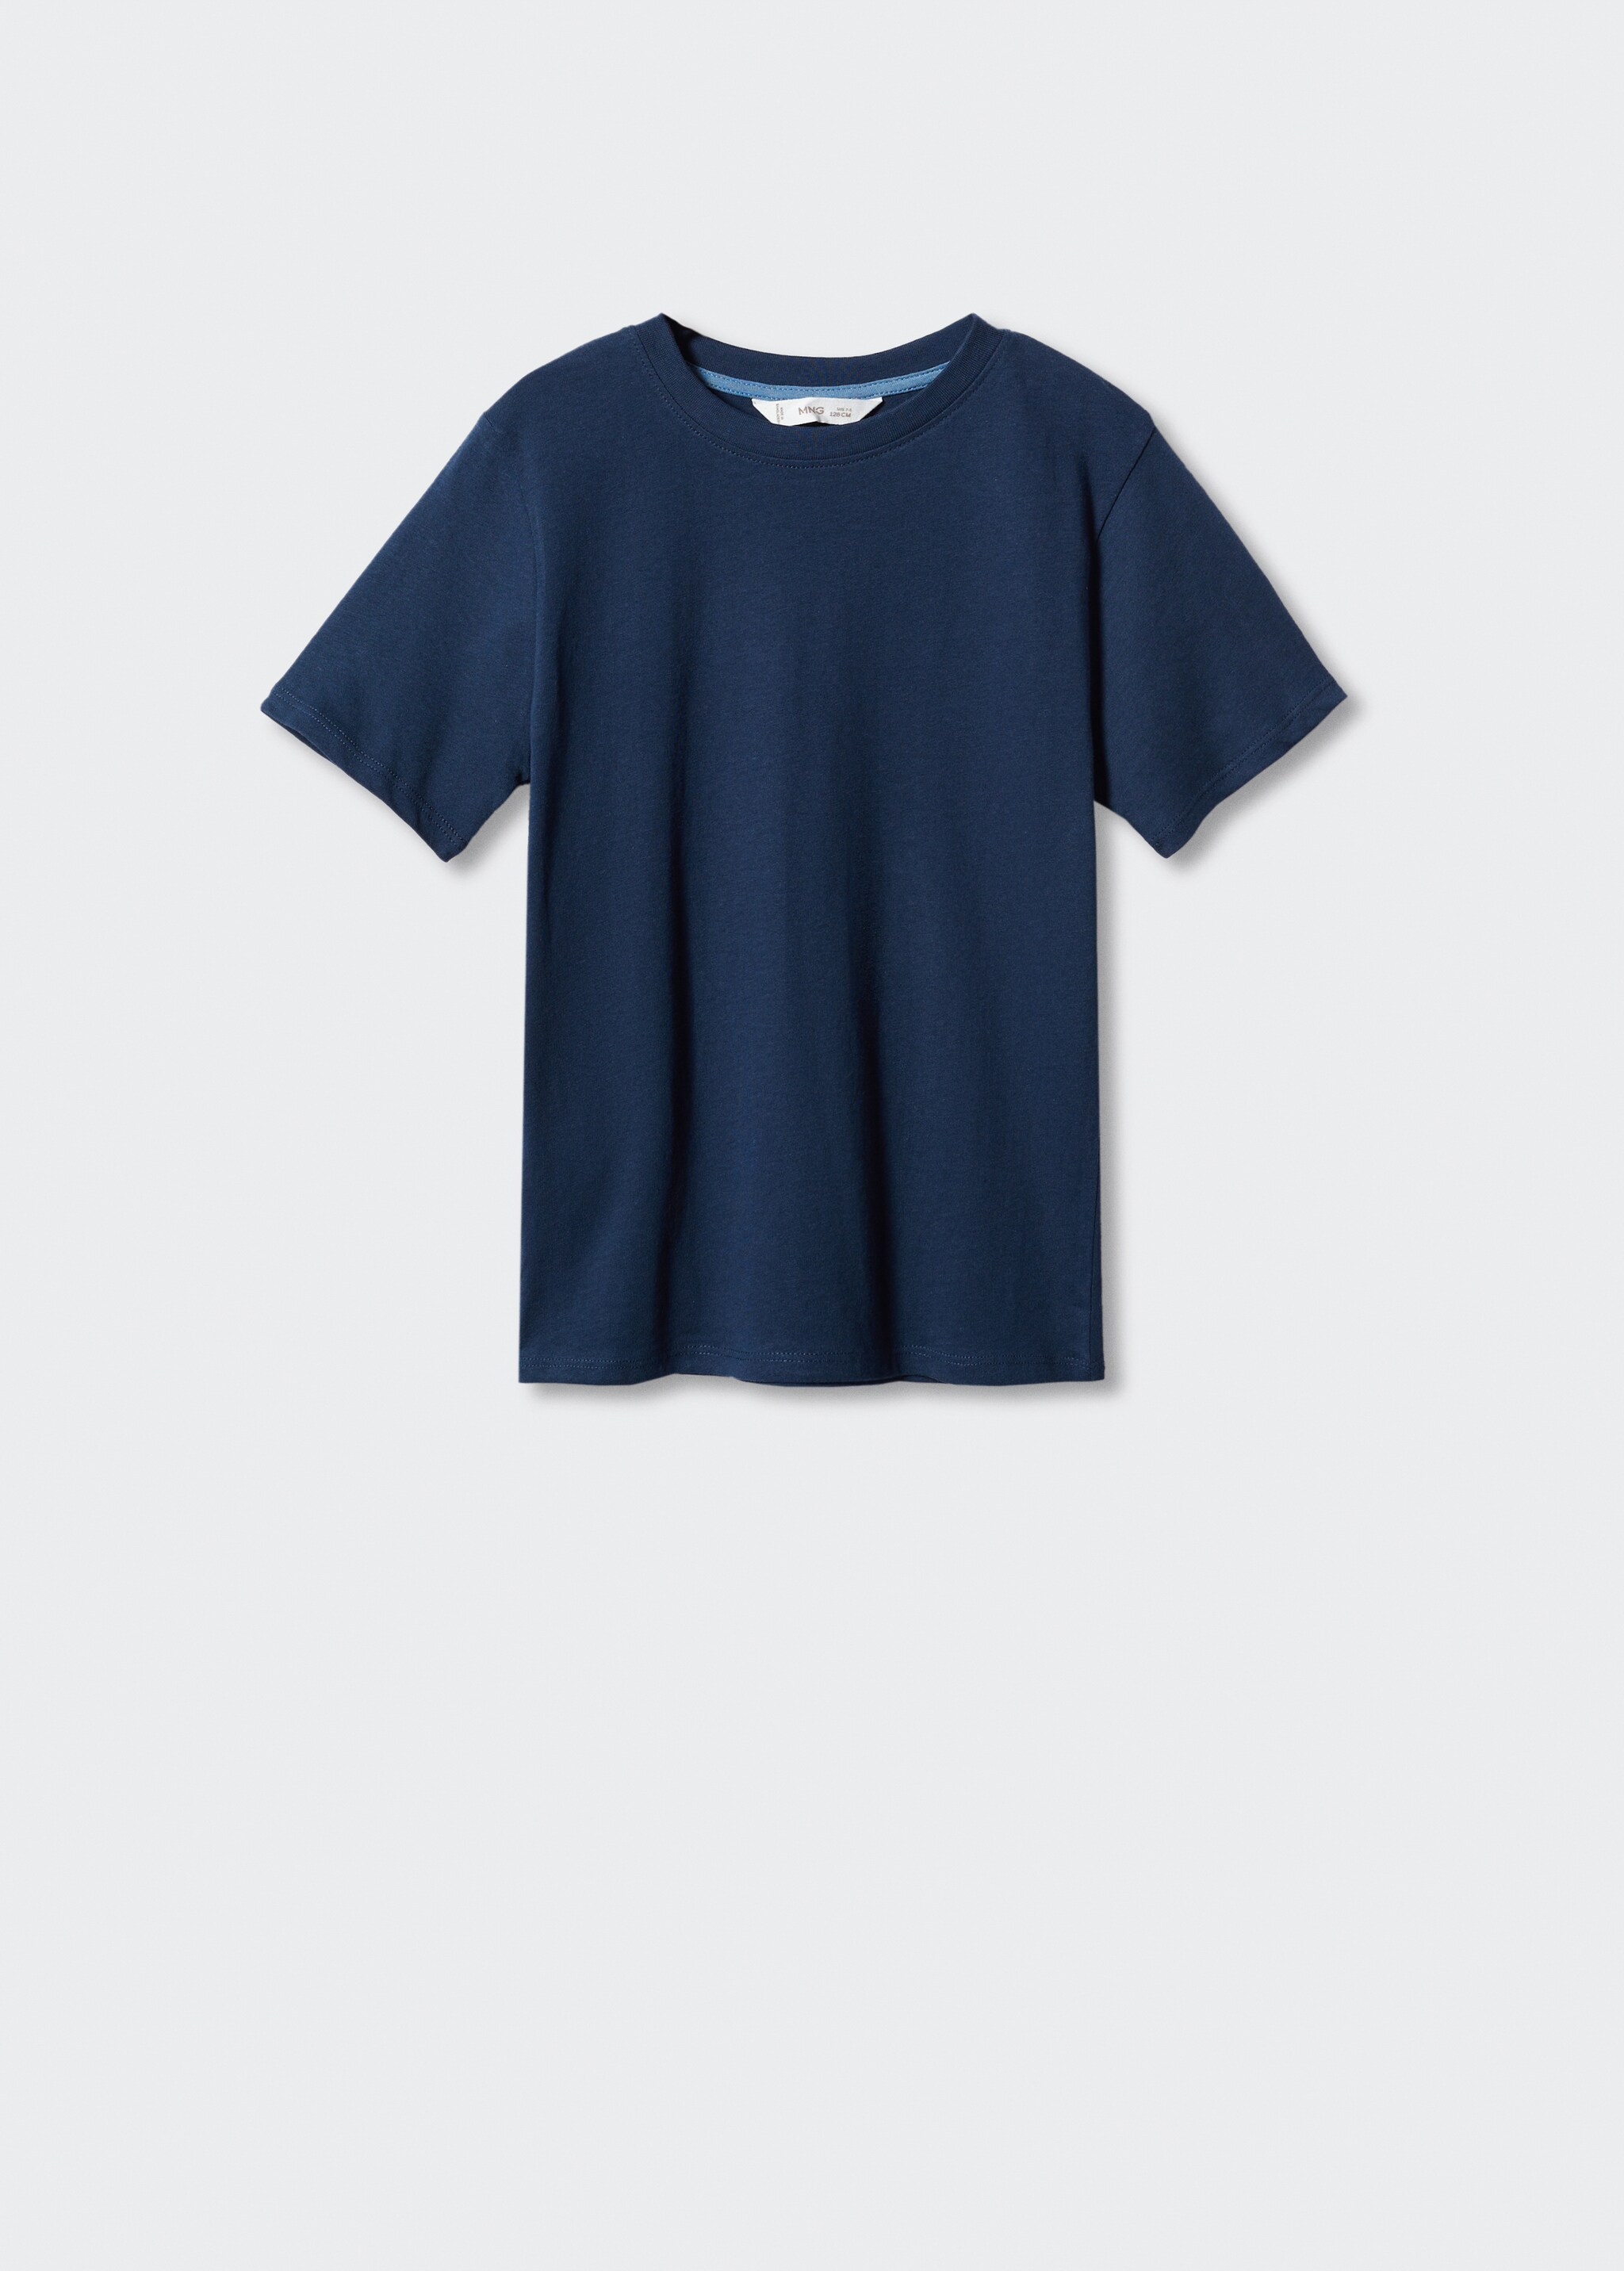 Camiseta básica 100% algodón  - Artículo sin modelo